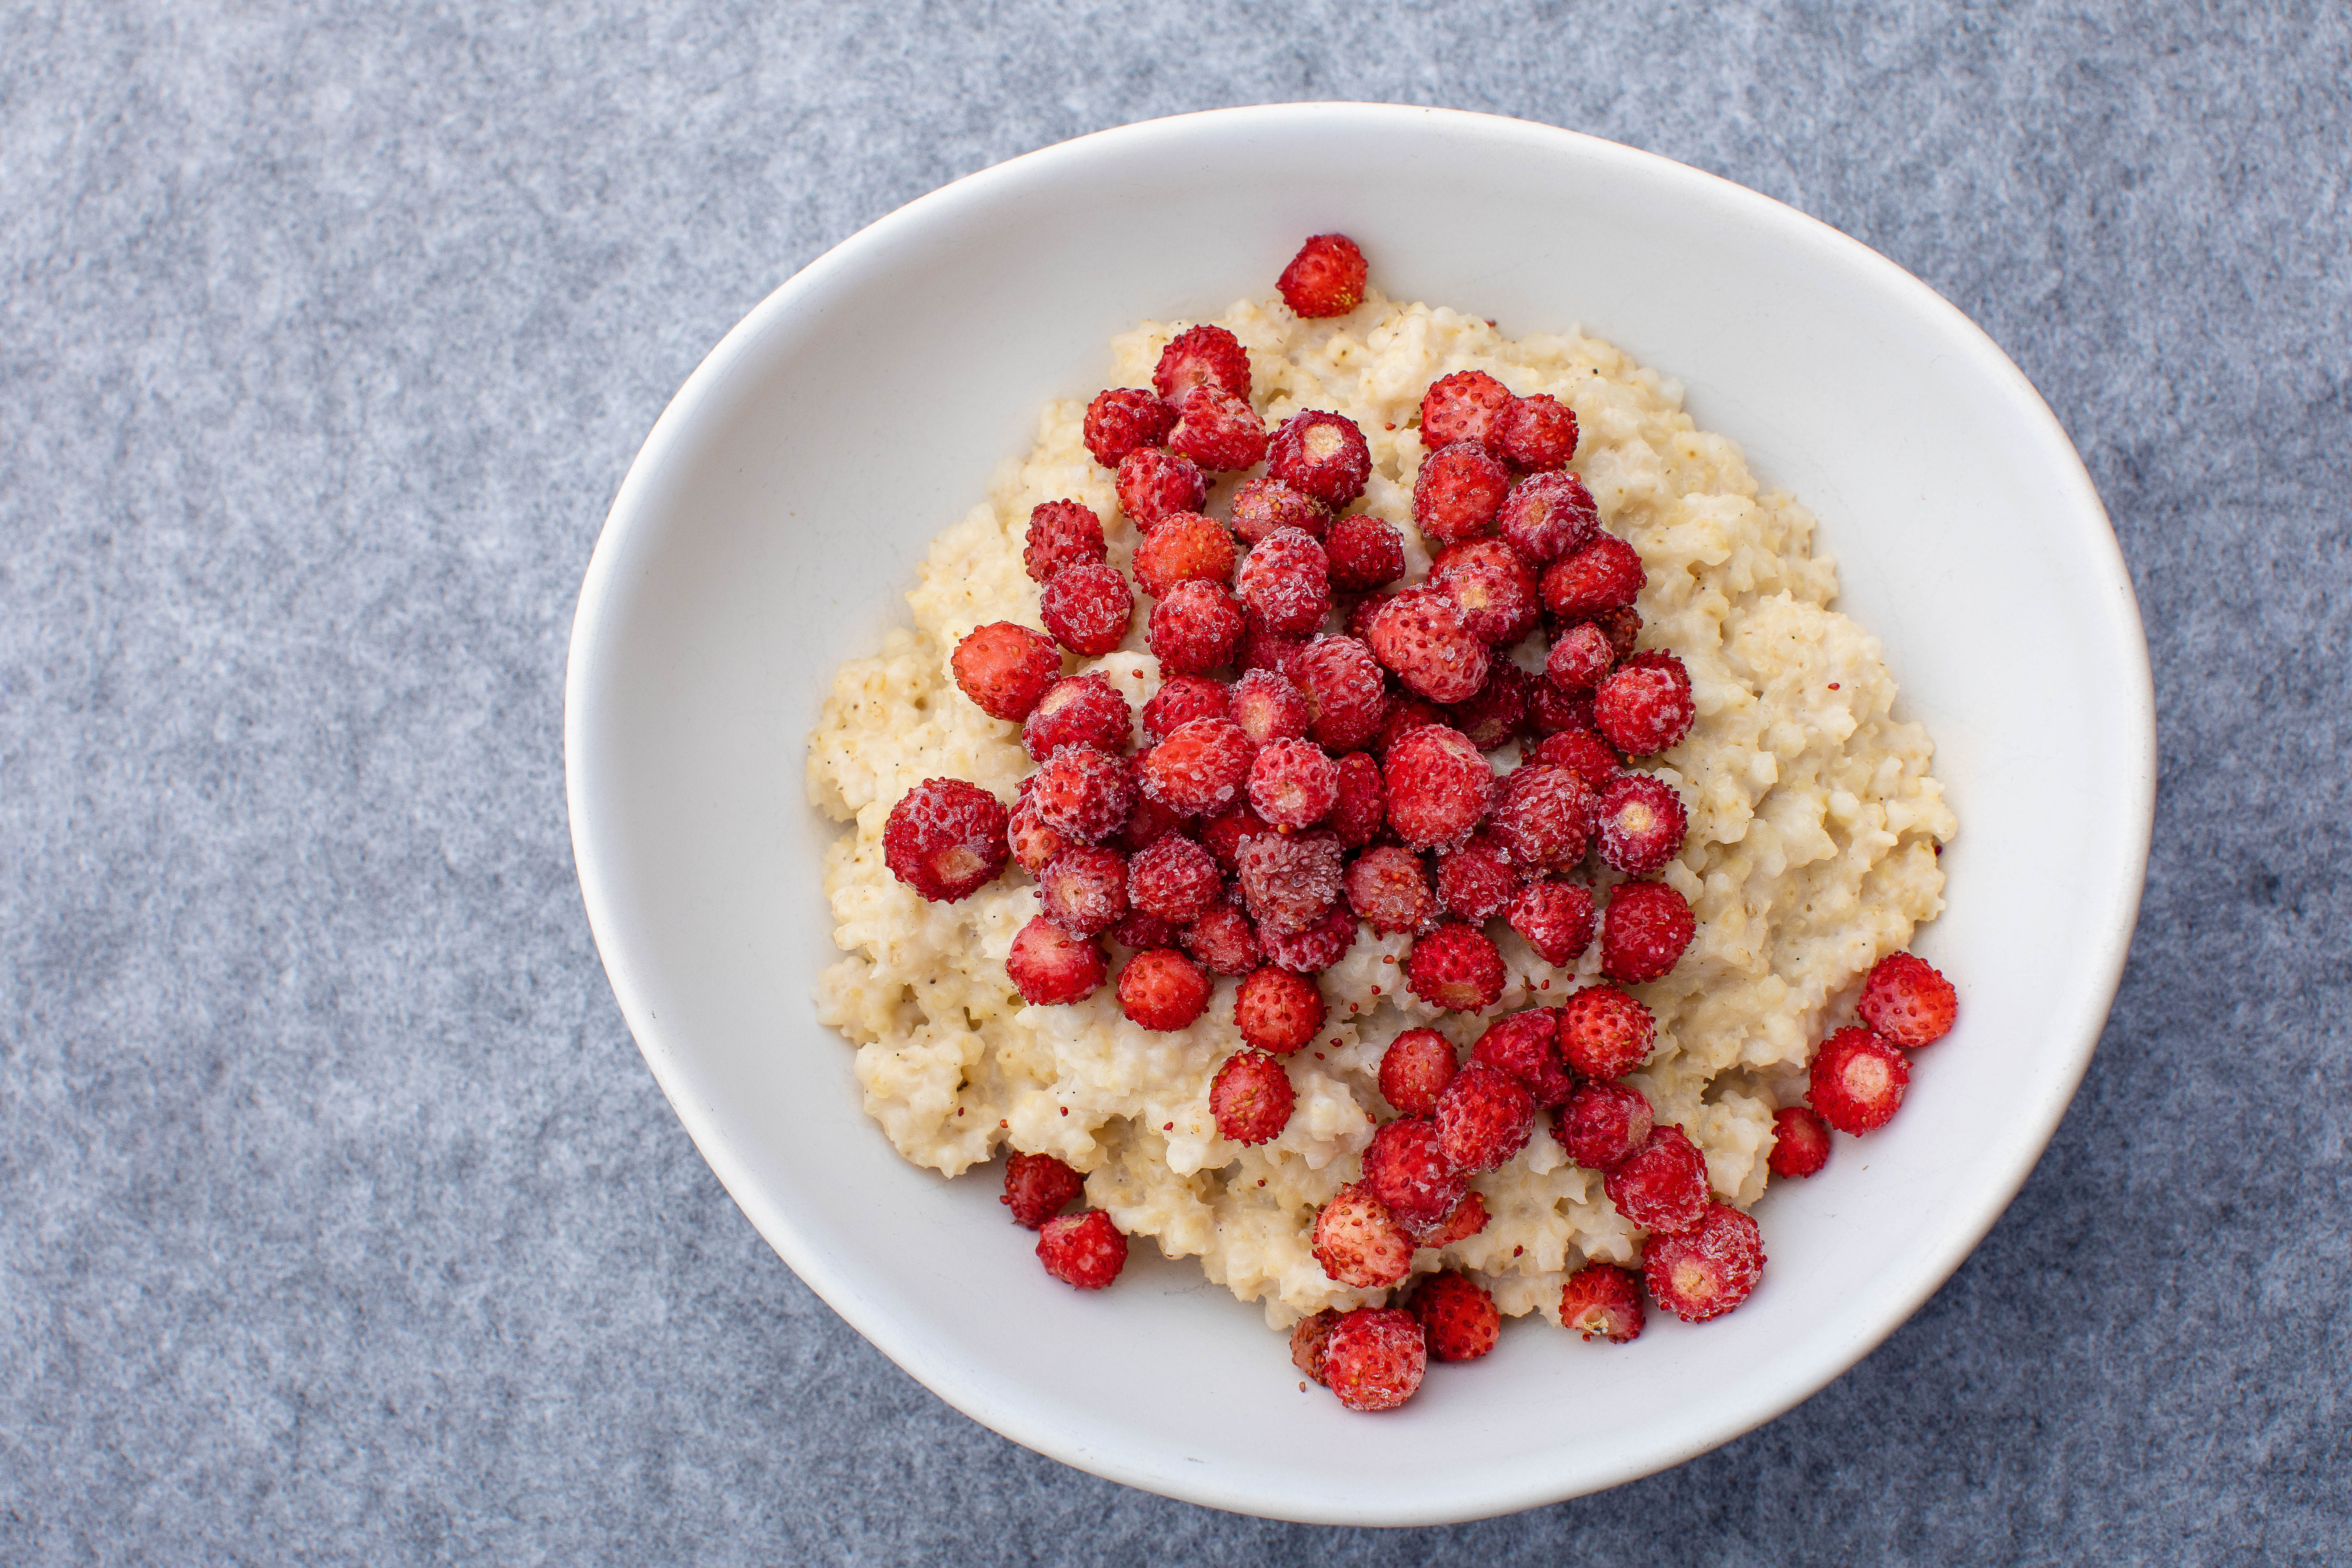 Creamy vegan millet porridge with berries